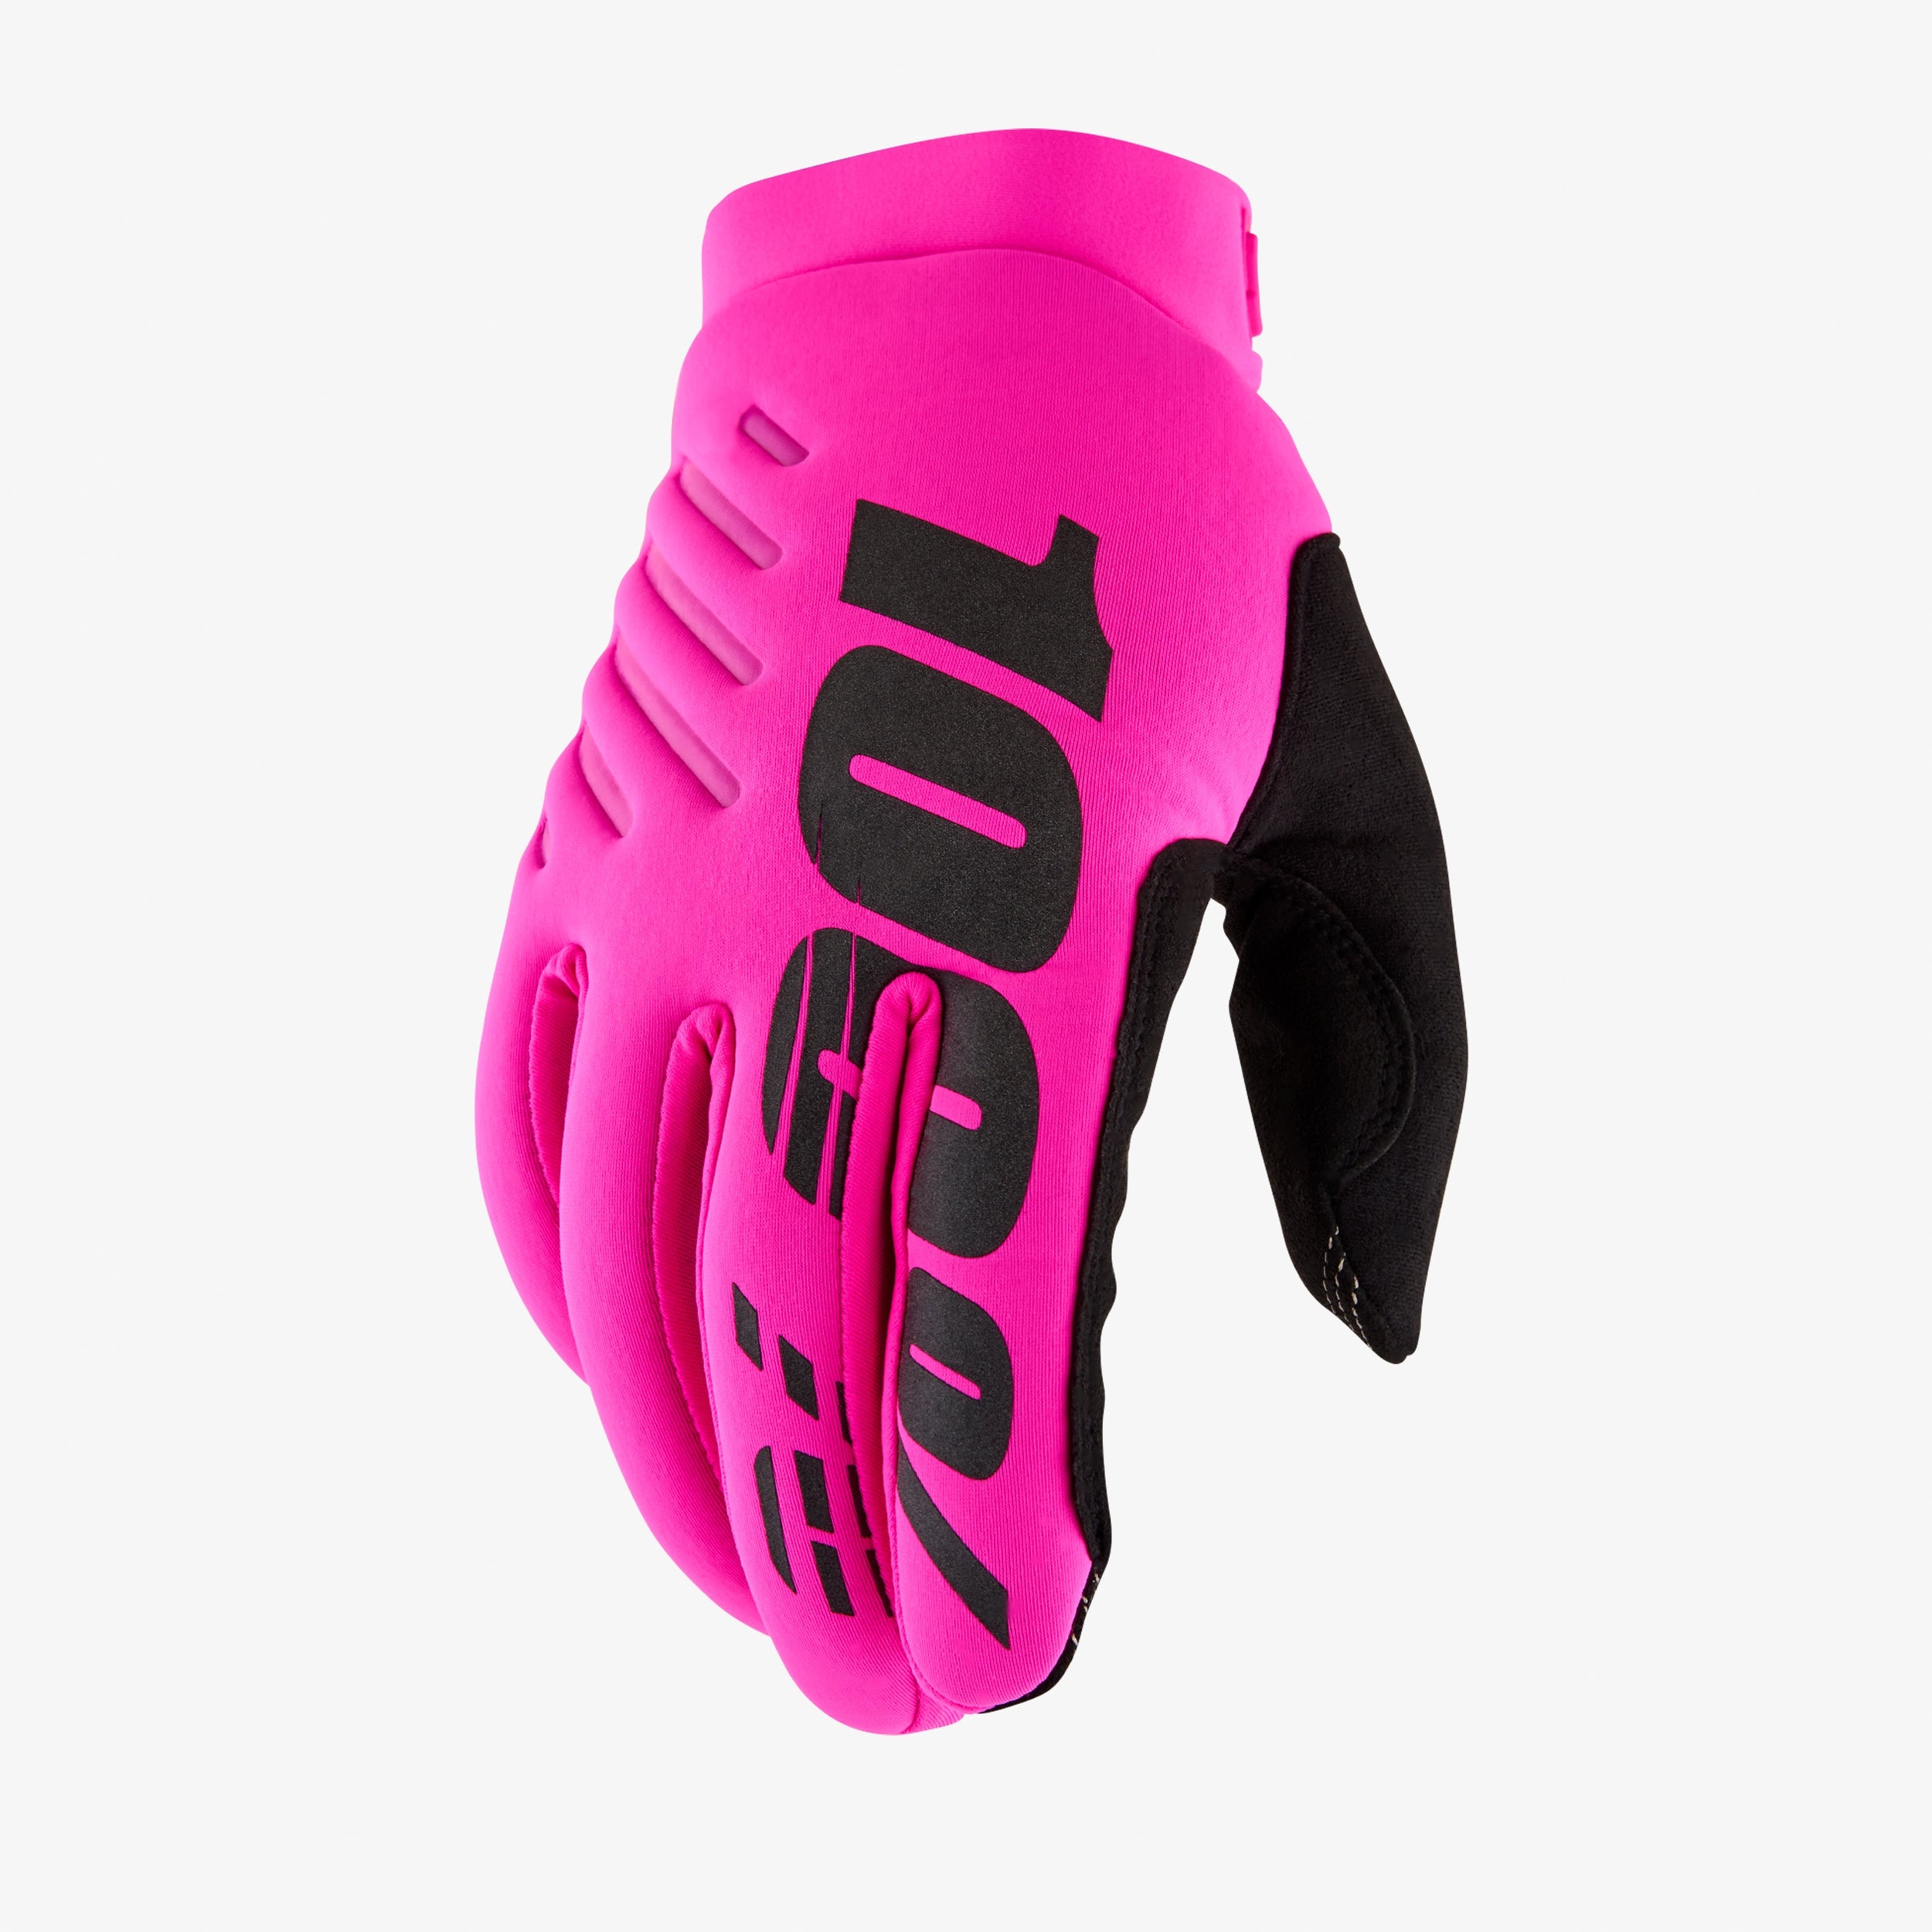 BRISKER Women's Gloves Neon Pink/Black